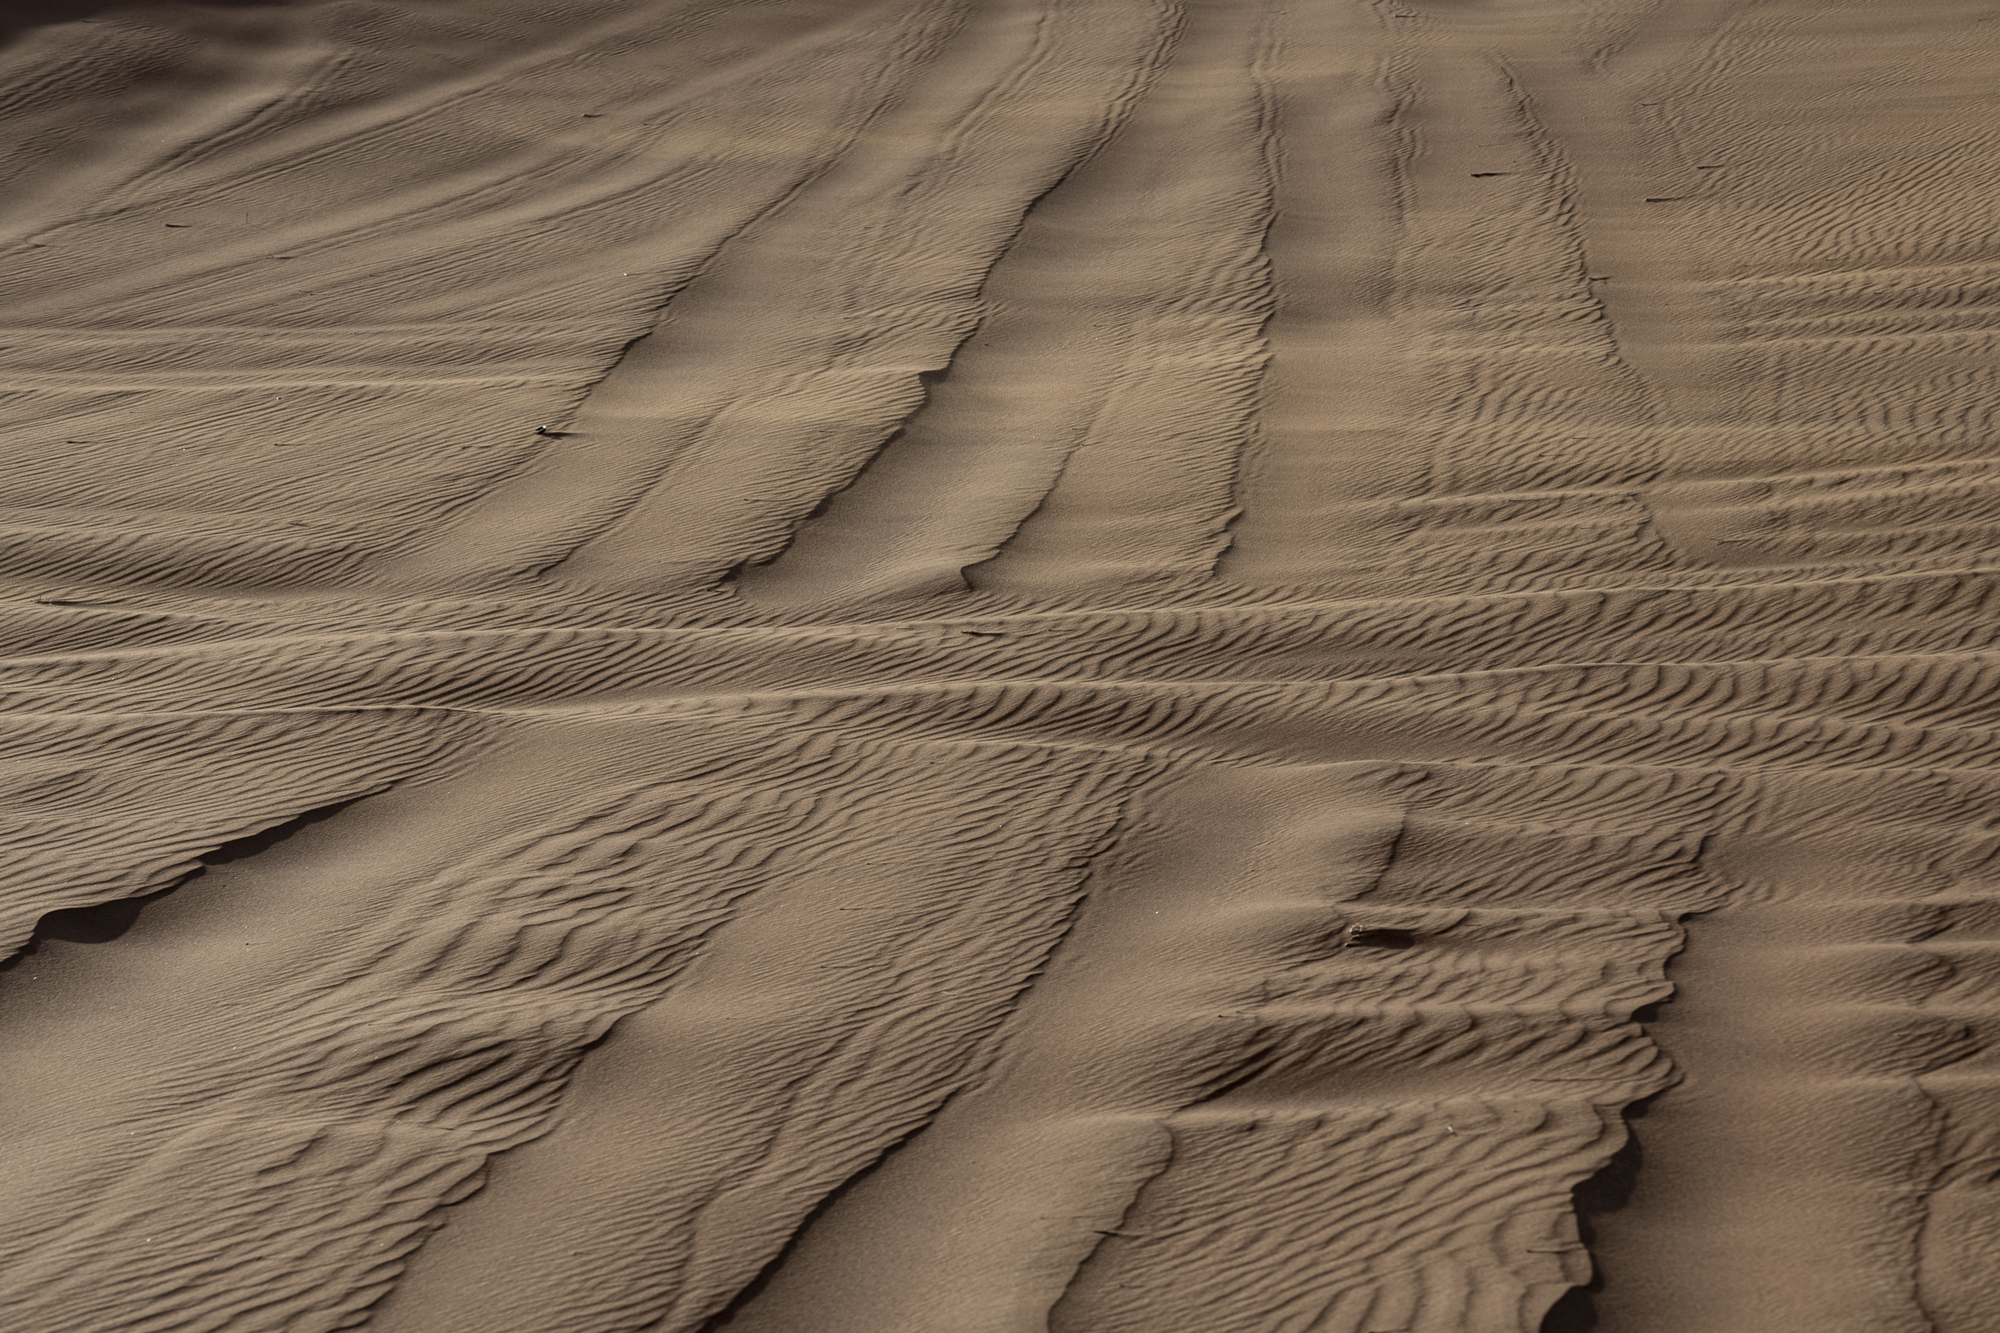 Sharjah dunes XV